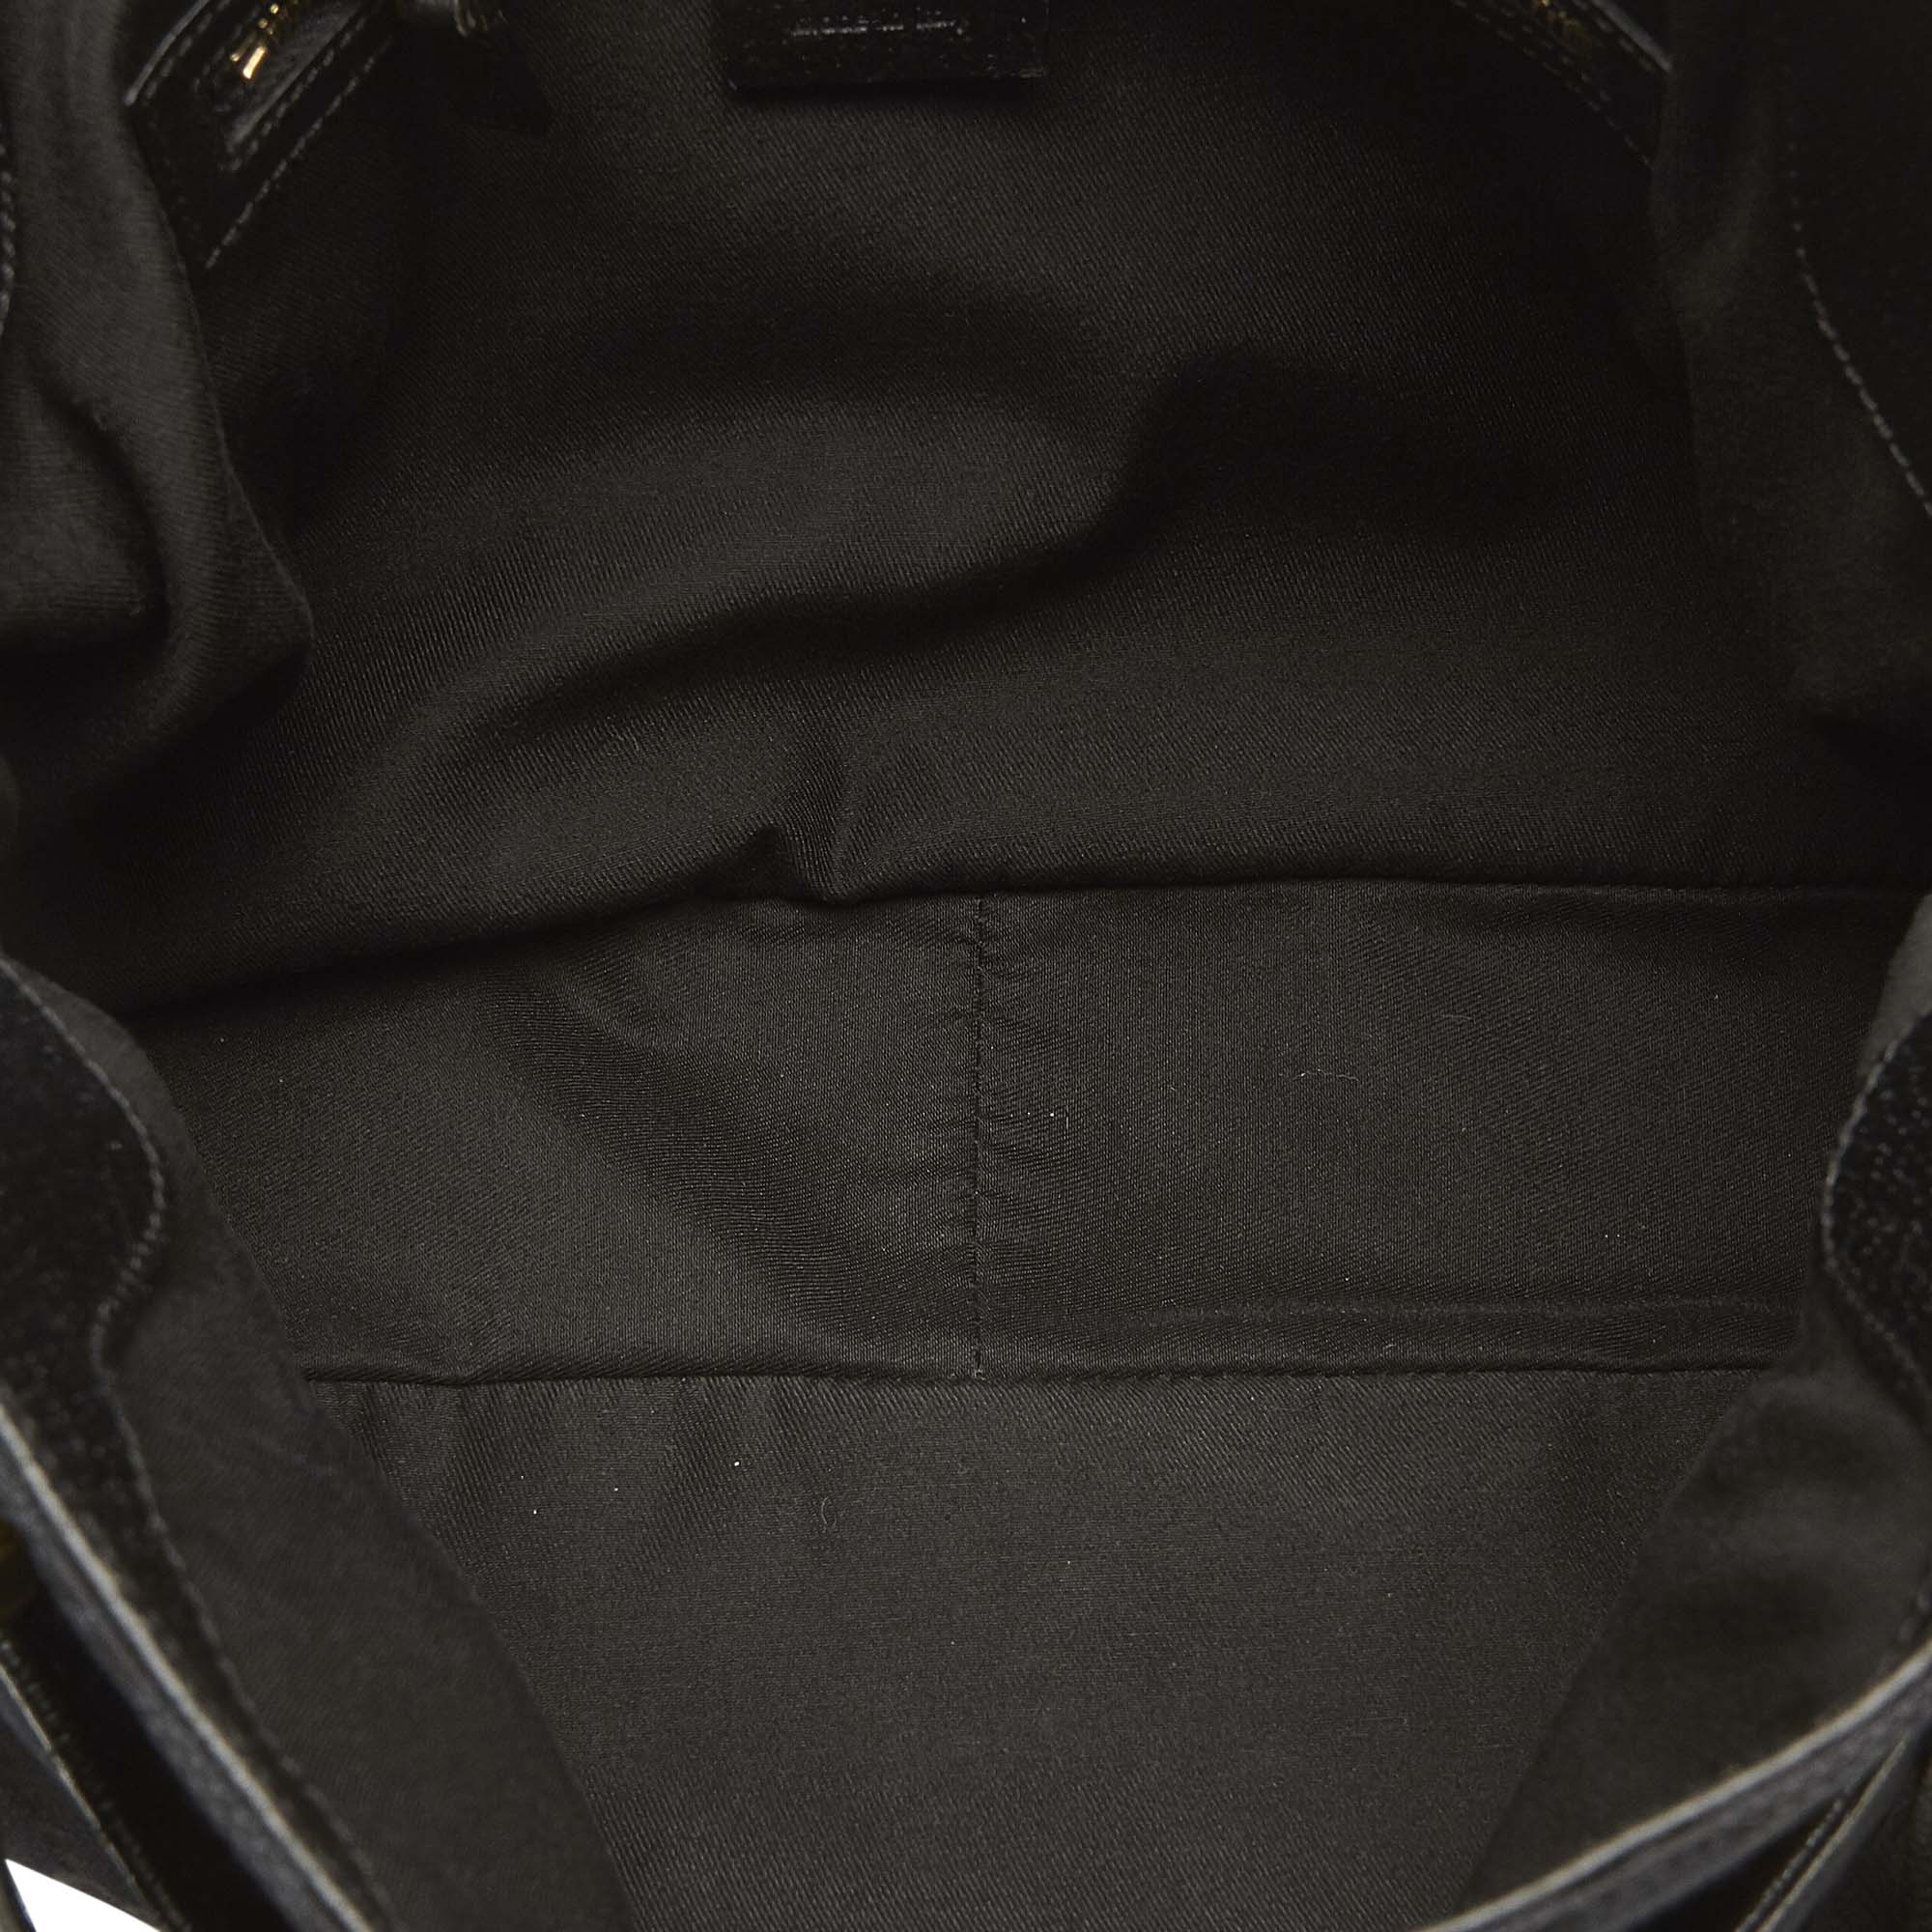 Gucci GG Canvas Shoulder Bag - Image 5 of 9